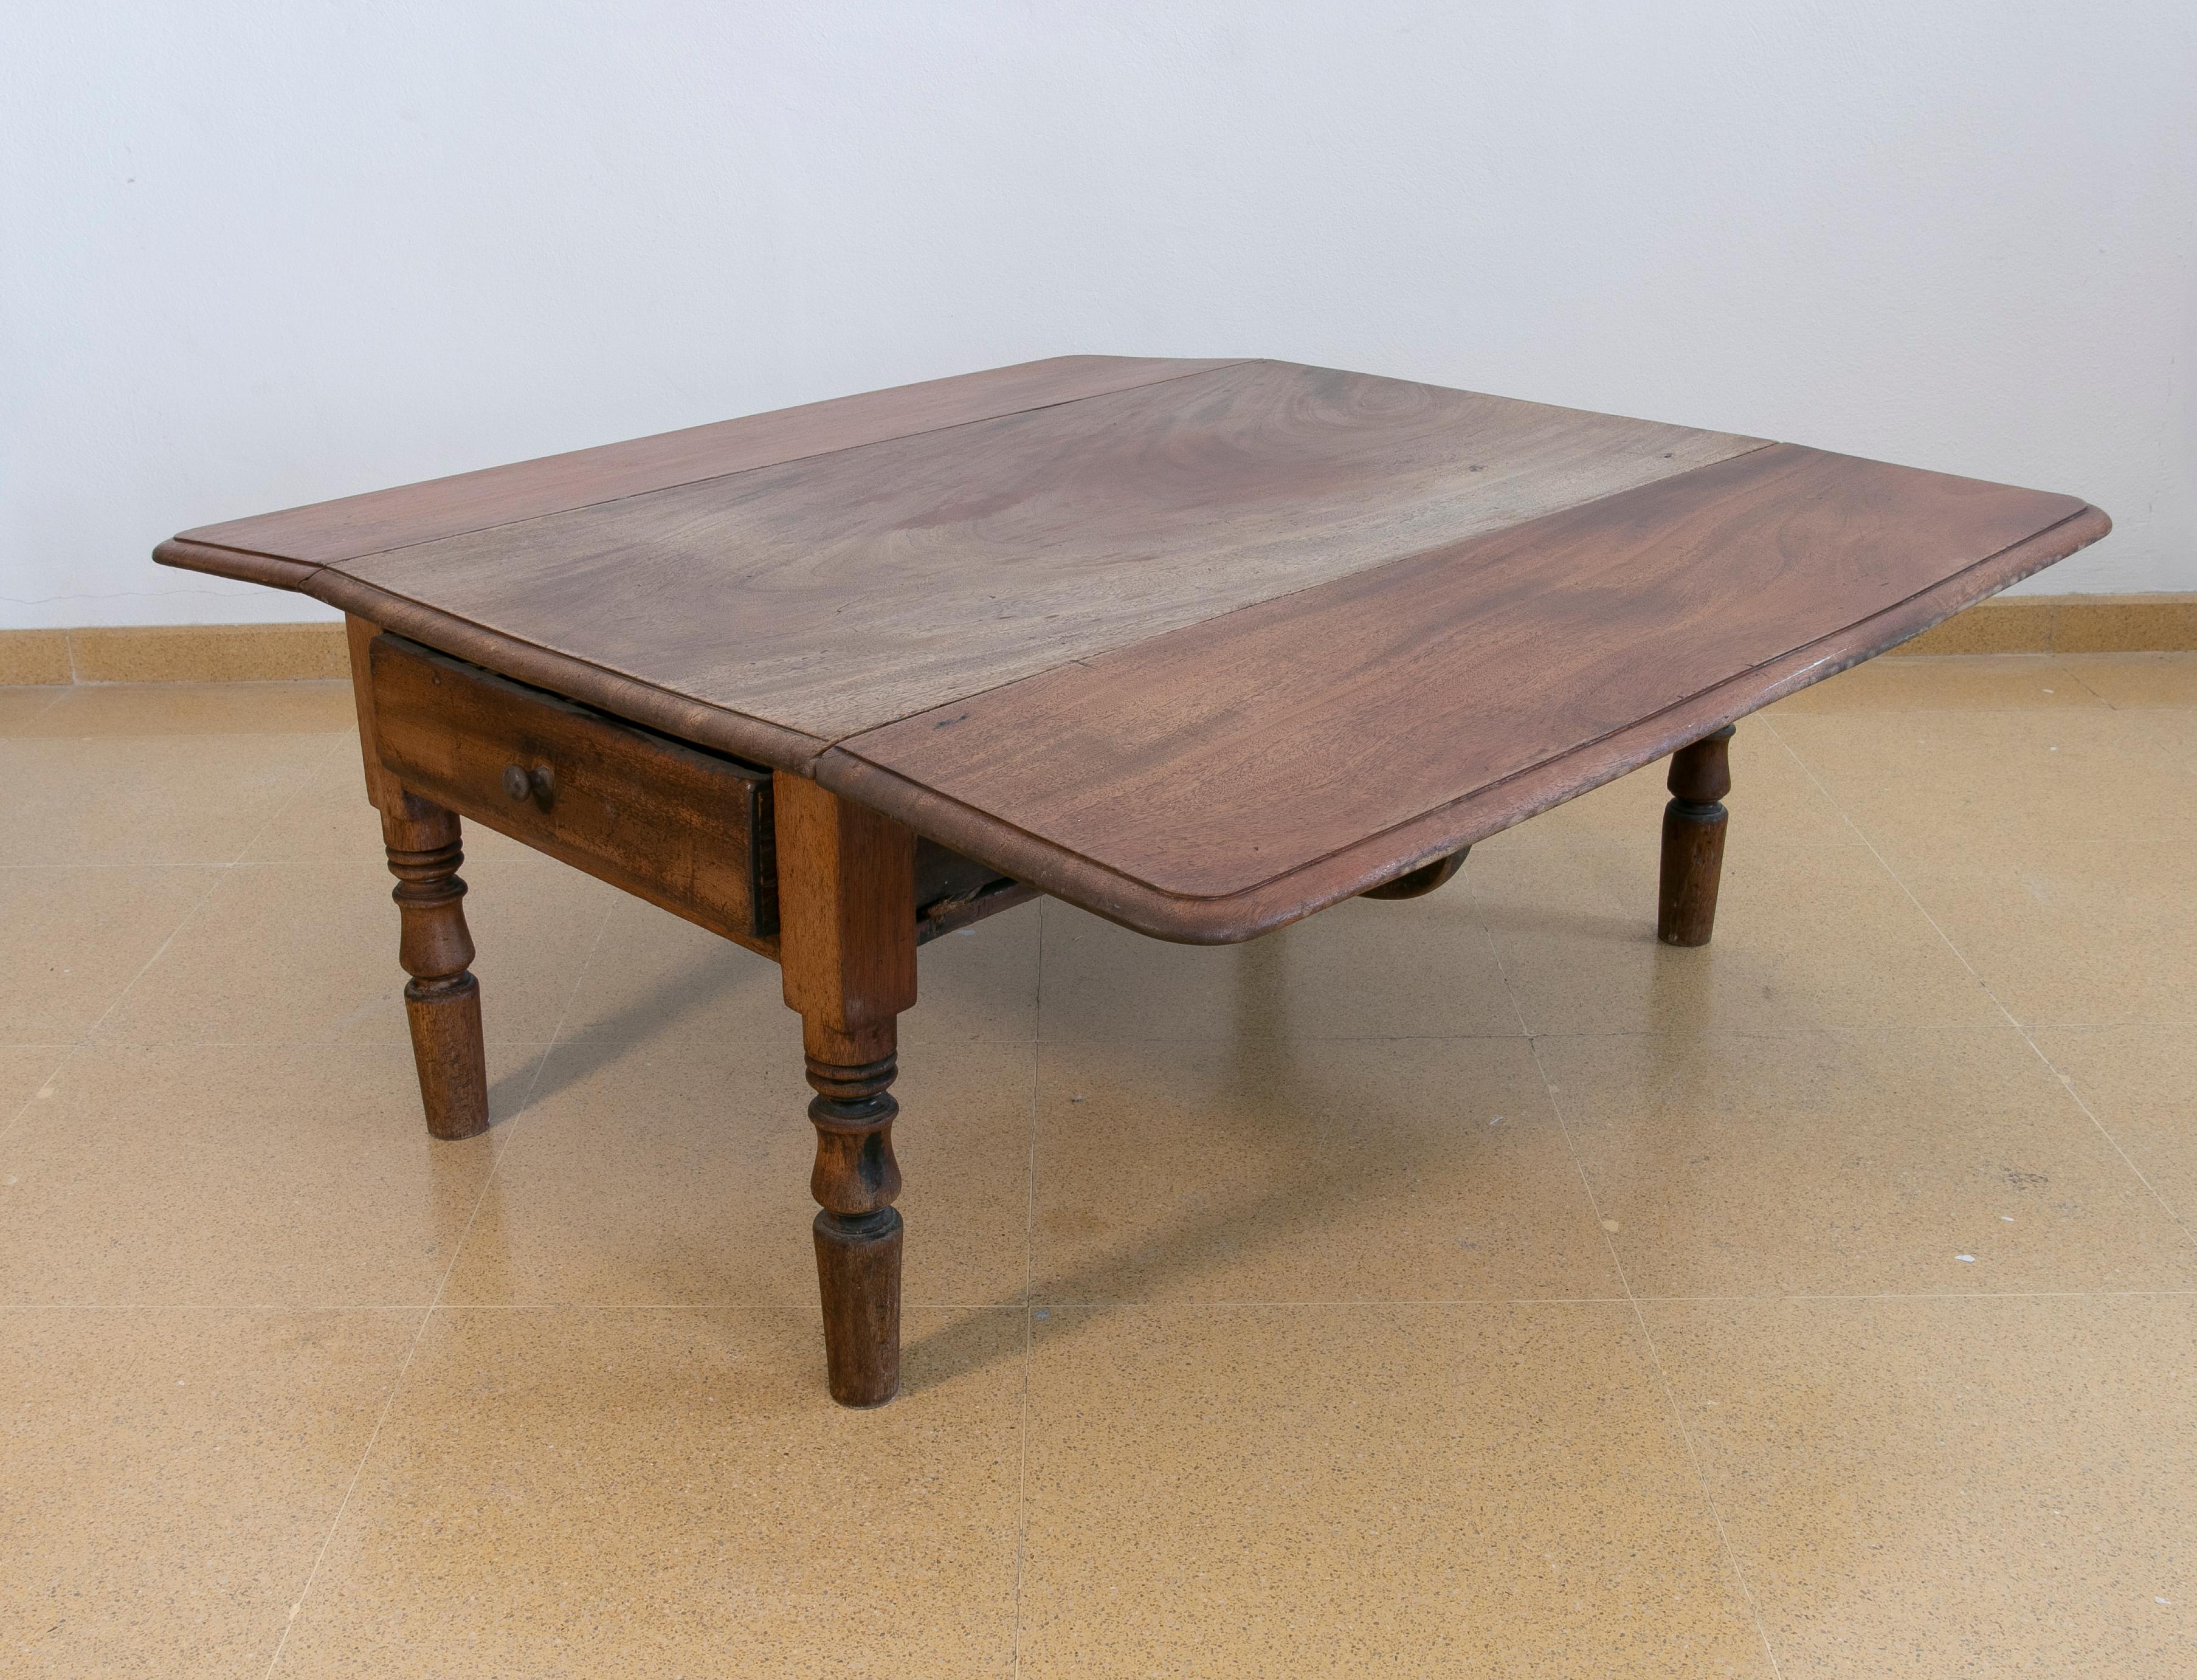 Kaffee-Flügeltisch aus Holz mit Schubladen an der Seite
Die Abmessungen des Open Table sind: 45x106x113cm.